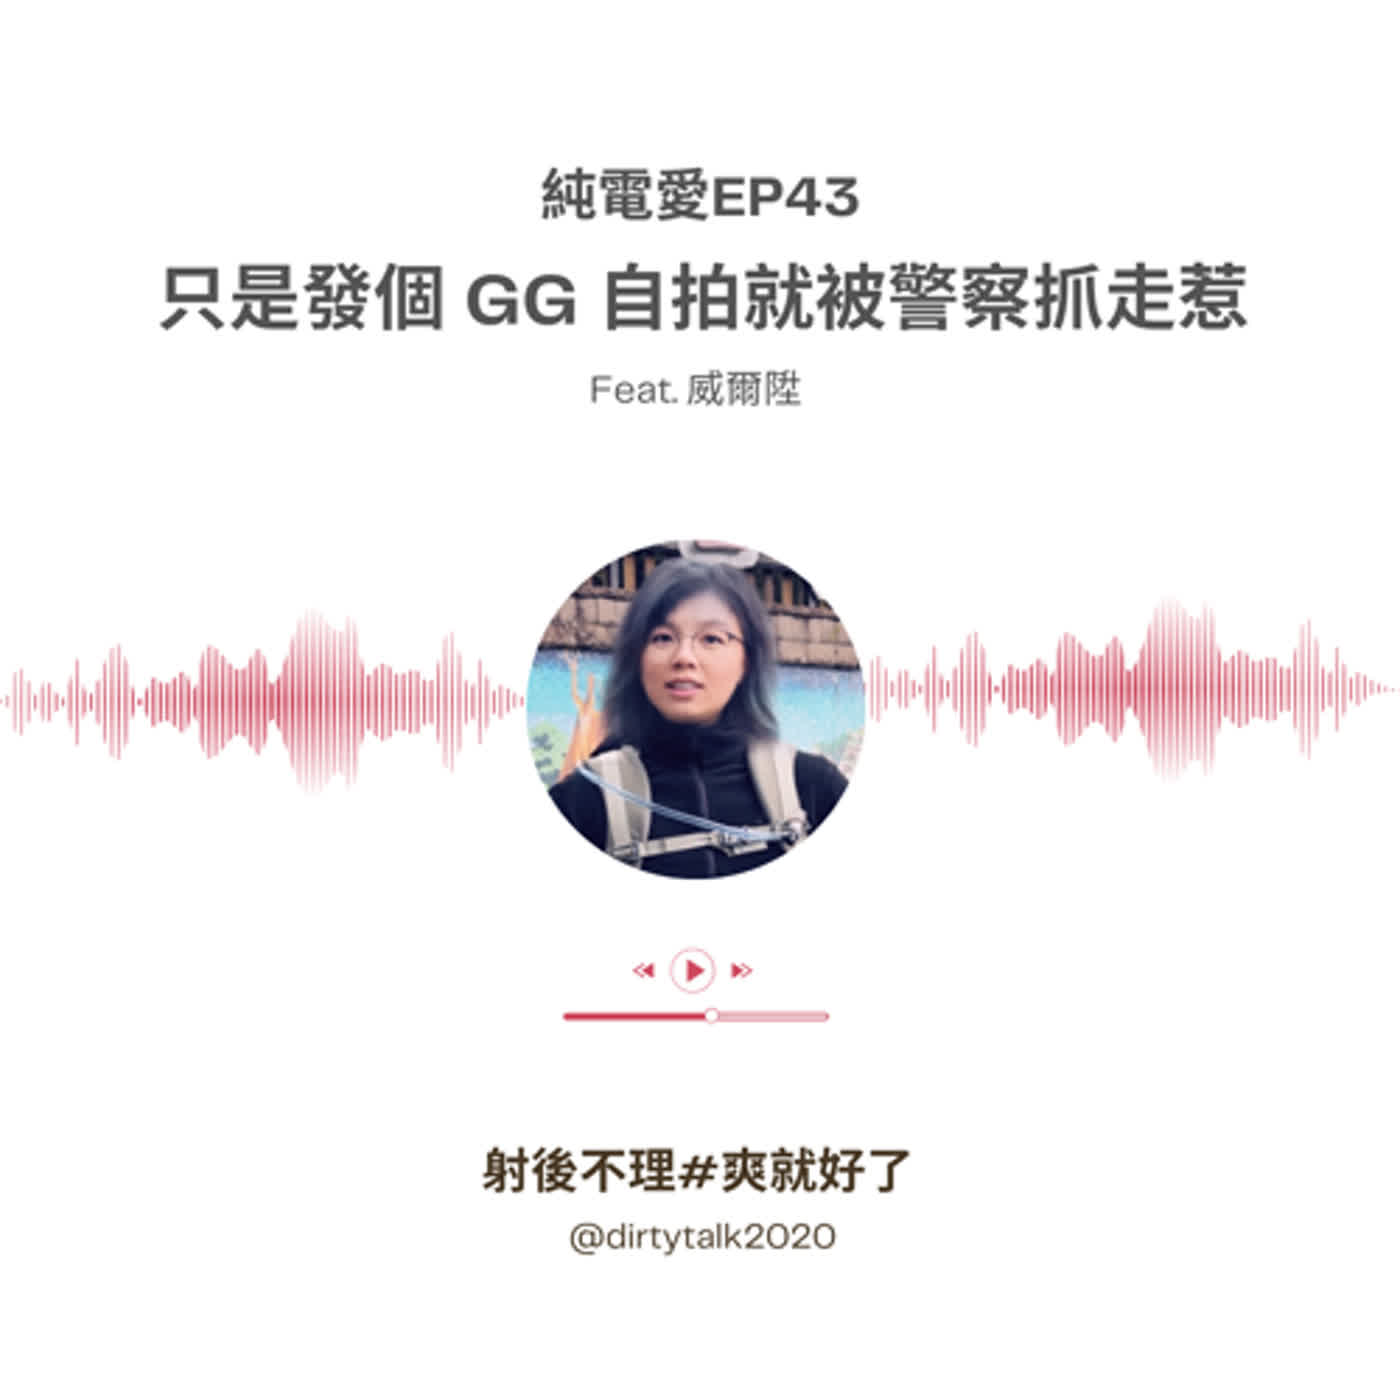 純電愛EP43 只是發個 GG 自拍就被警察抓走惹 Feat.威爾陞